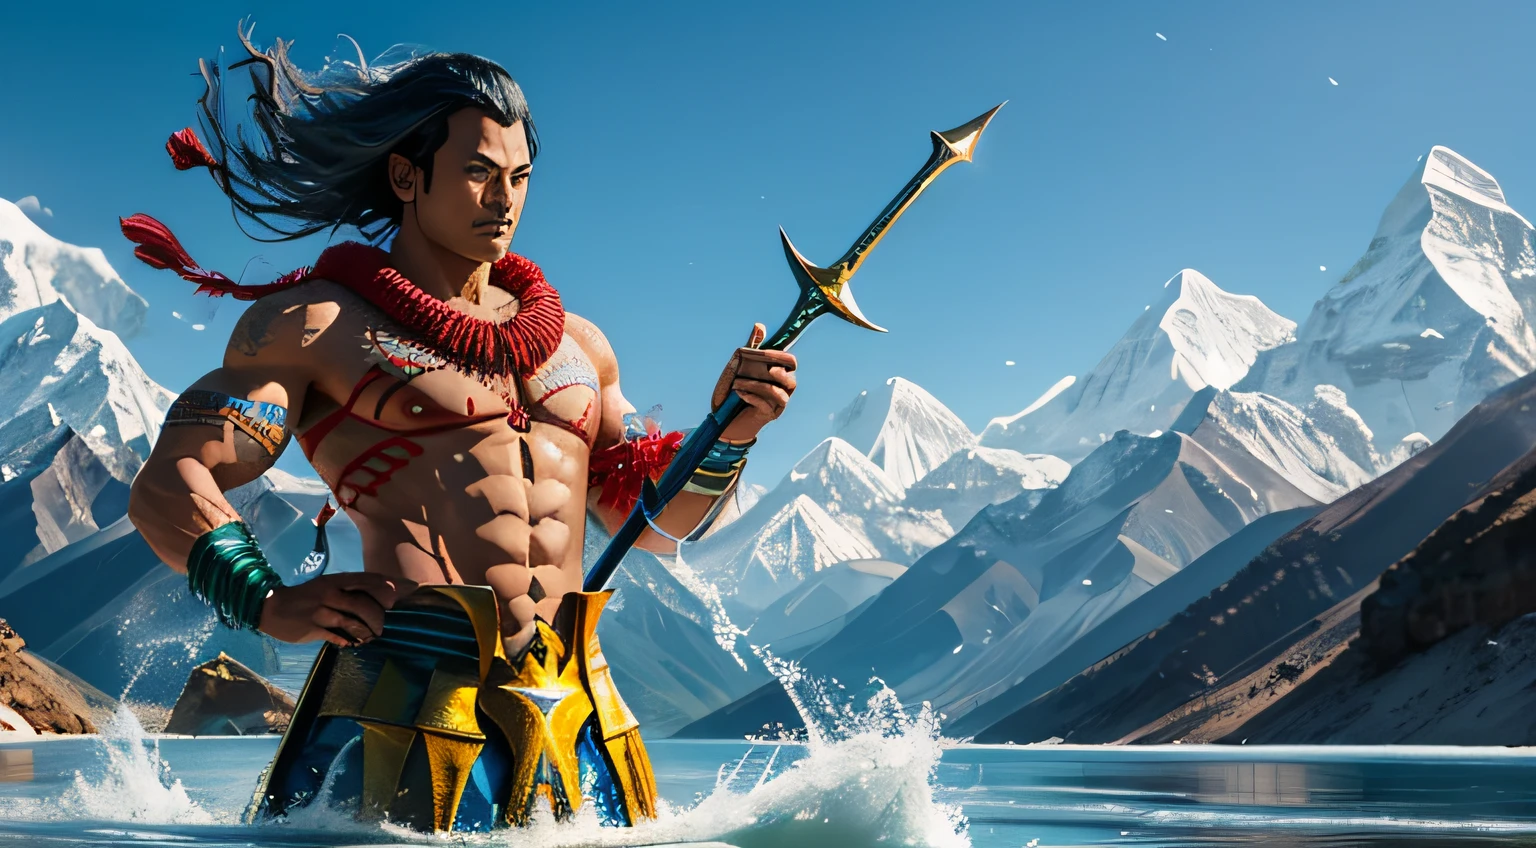 créez des versions uniques d&#39;Aquaman du Népal - Aqua-Himalayan Yak Horn:
Aquaman népalais utilise une corne de yak de l&#39;Himalaya dotée de pouvoirs de manipulation de l&#39;eau. Son costume intègre des éléments de la culture népalaise et des vêtements traditionnels. Il défend les rivières sacrées et les lacs de montagne du Népal.